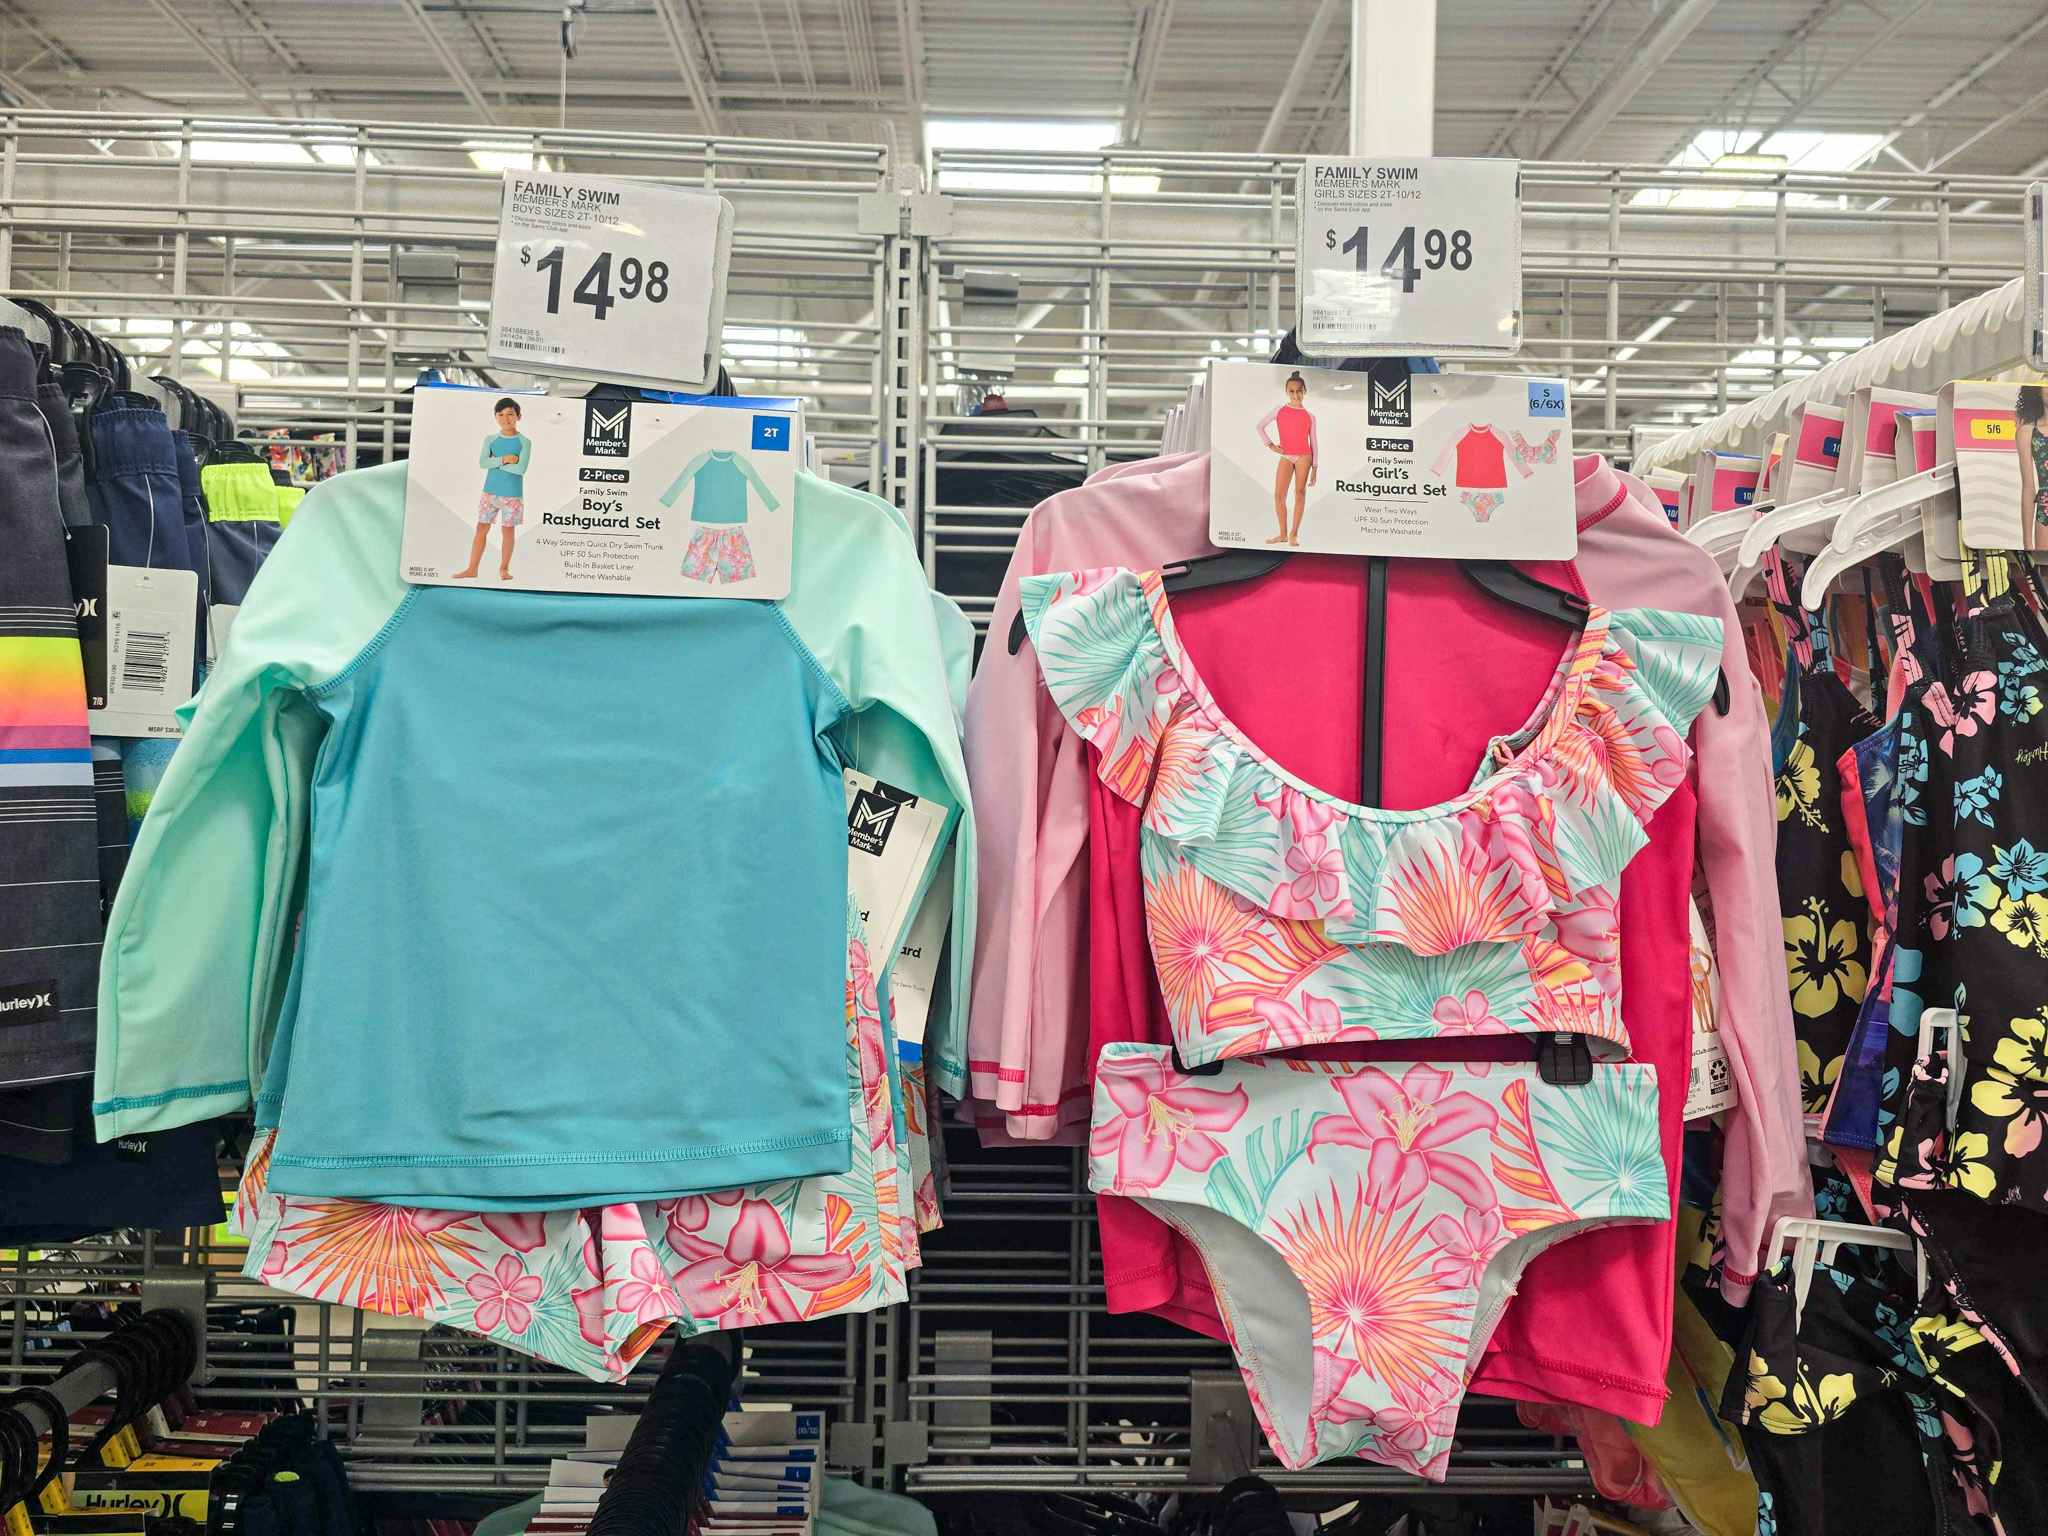 matching kids swimwear sets hanging up on display